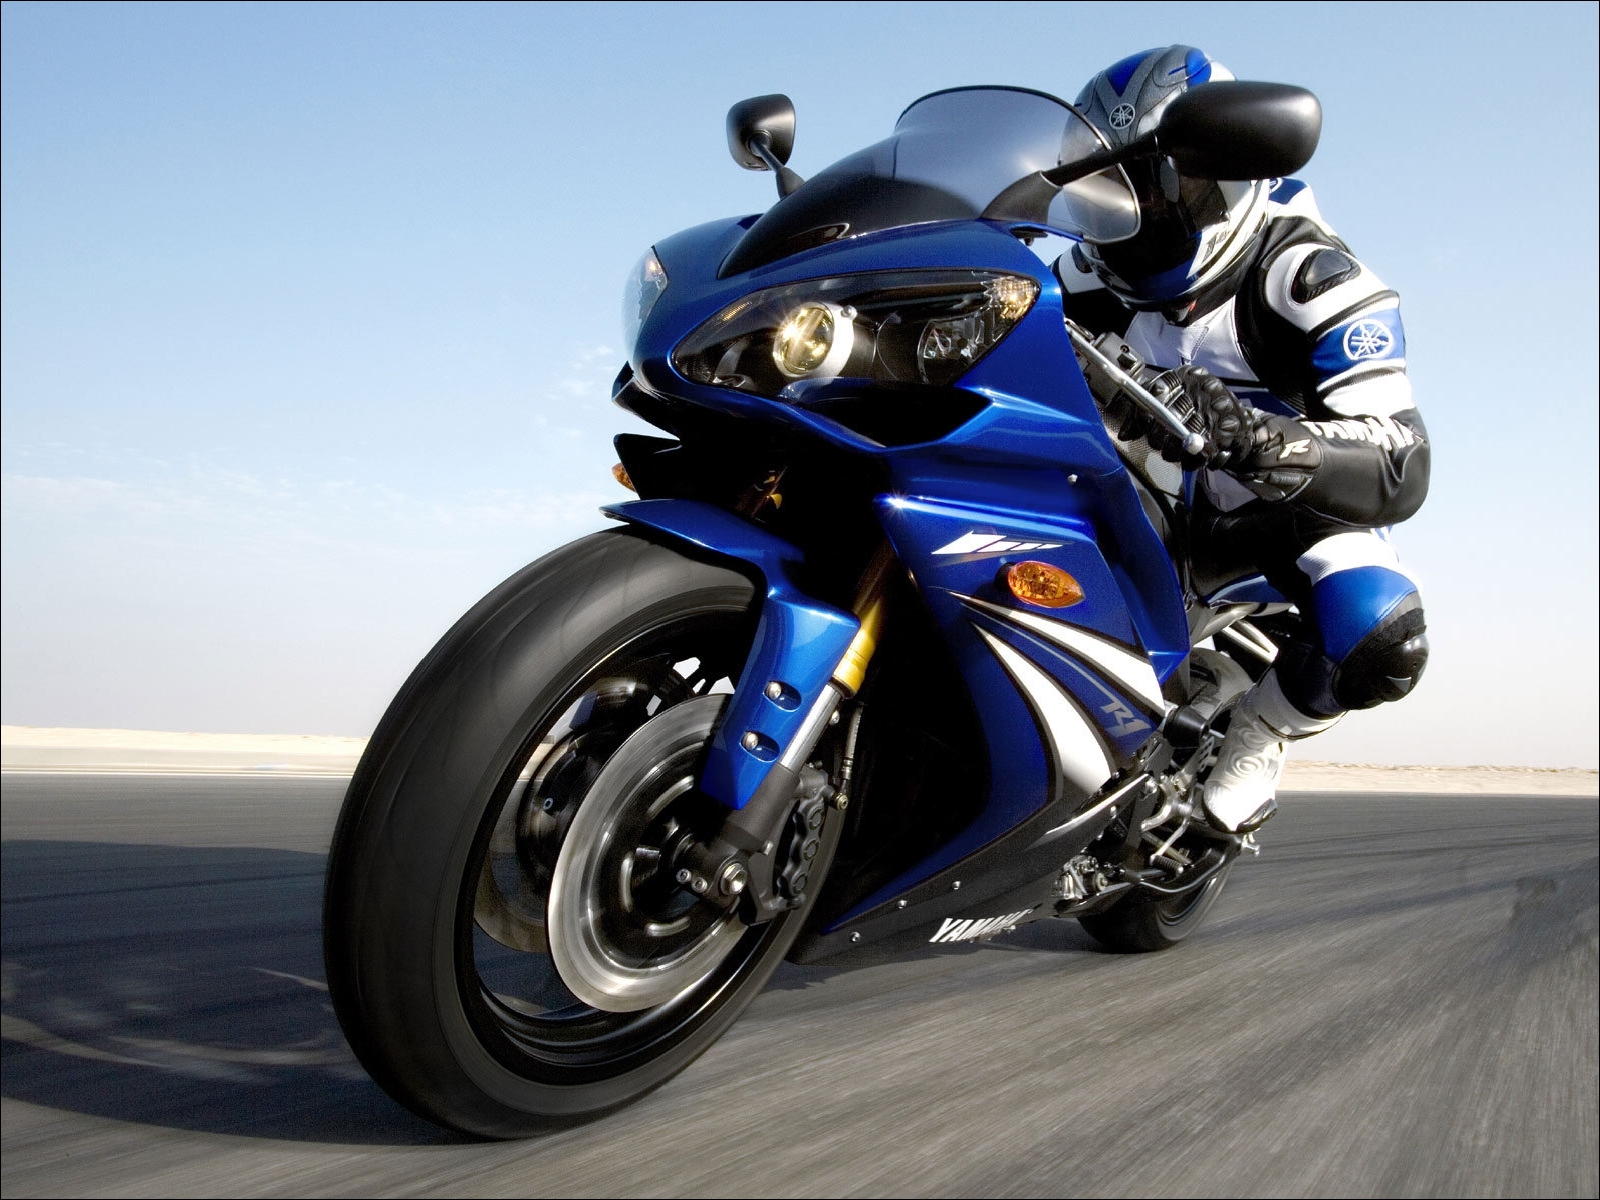 Fondos de Pantalla Yamaha Motocicleta descargar imagenes